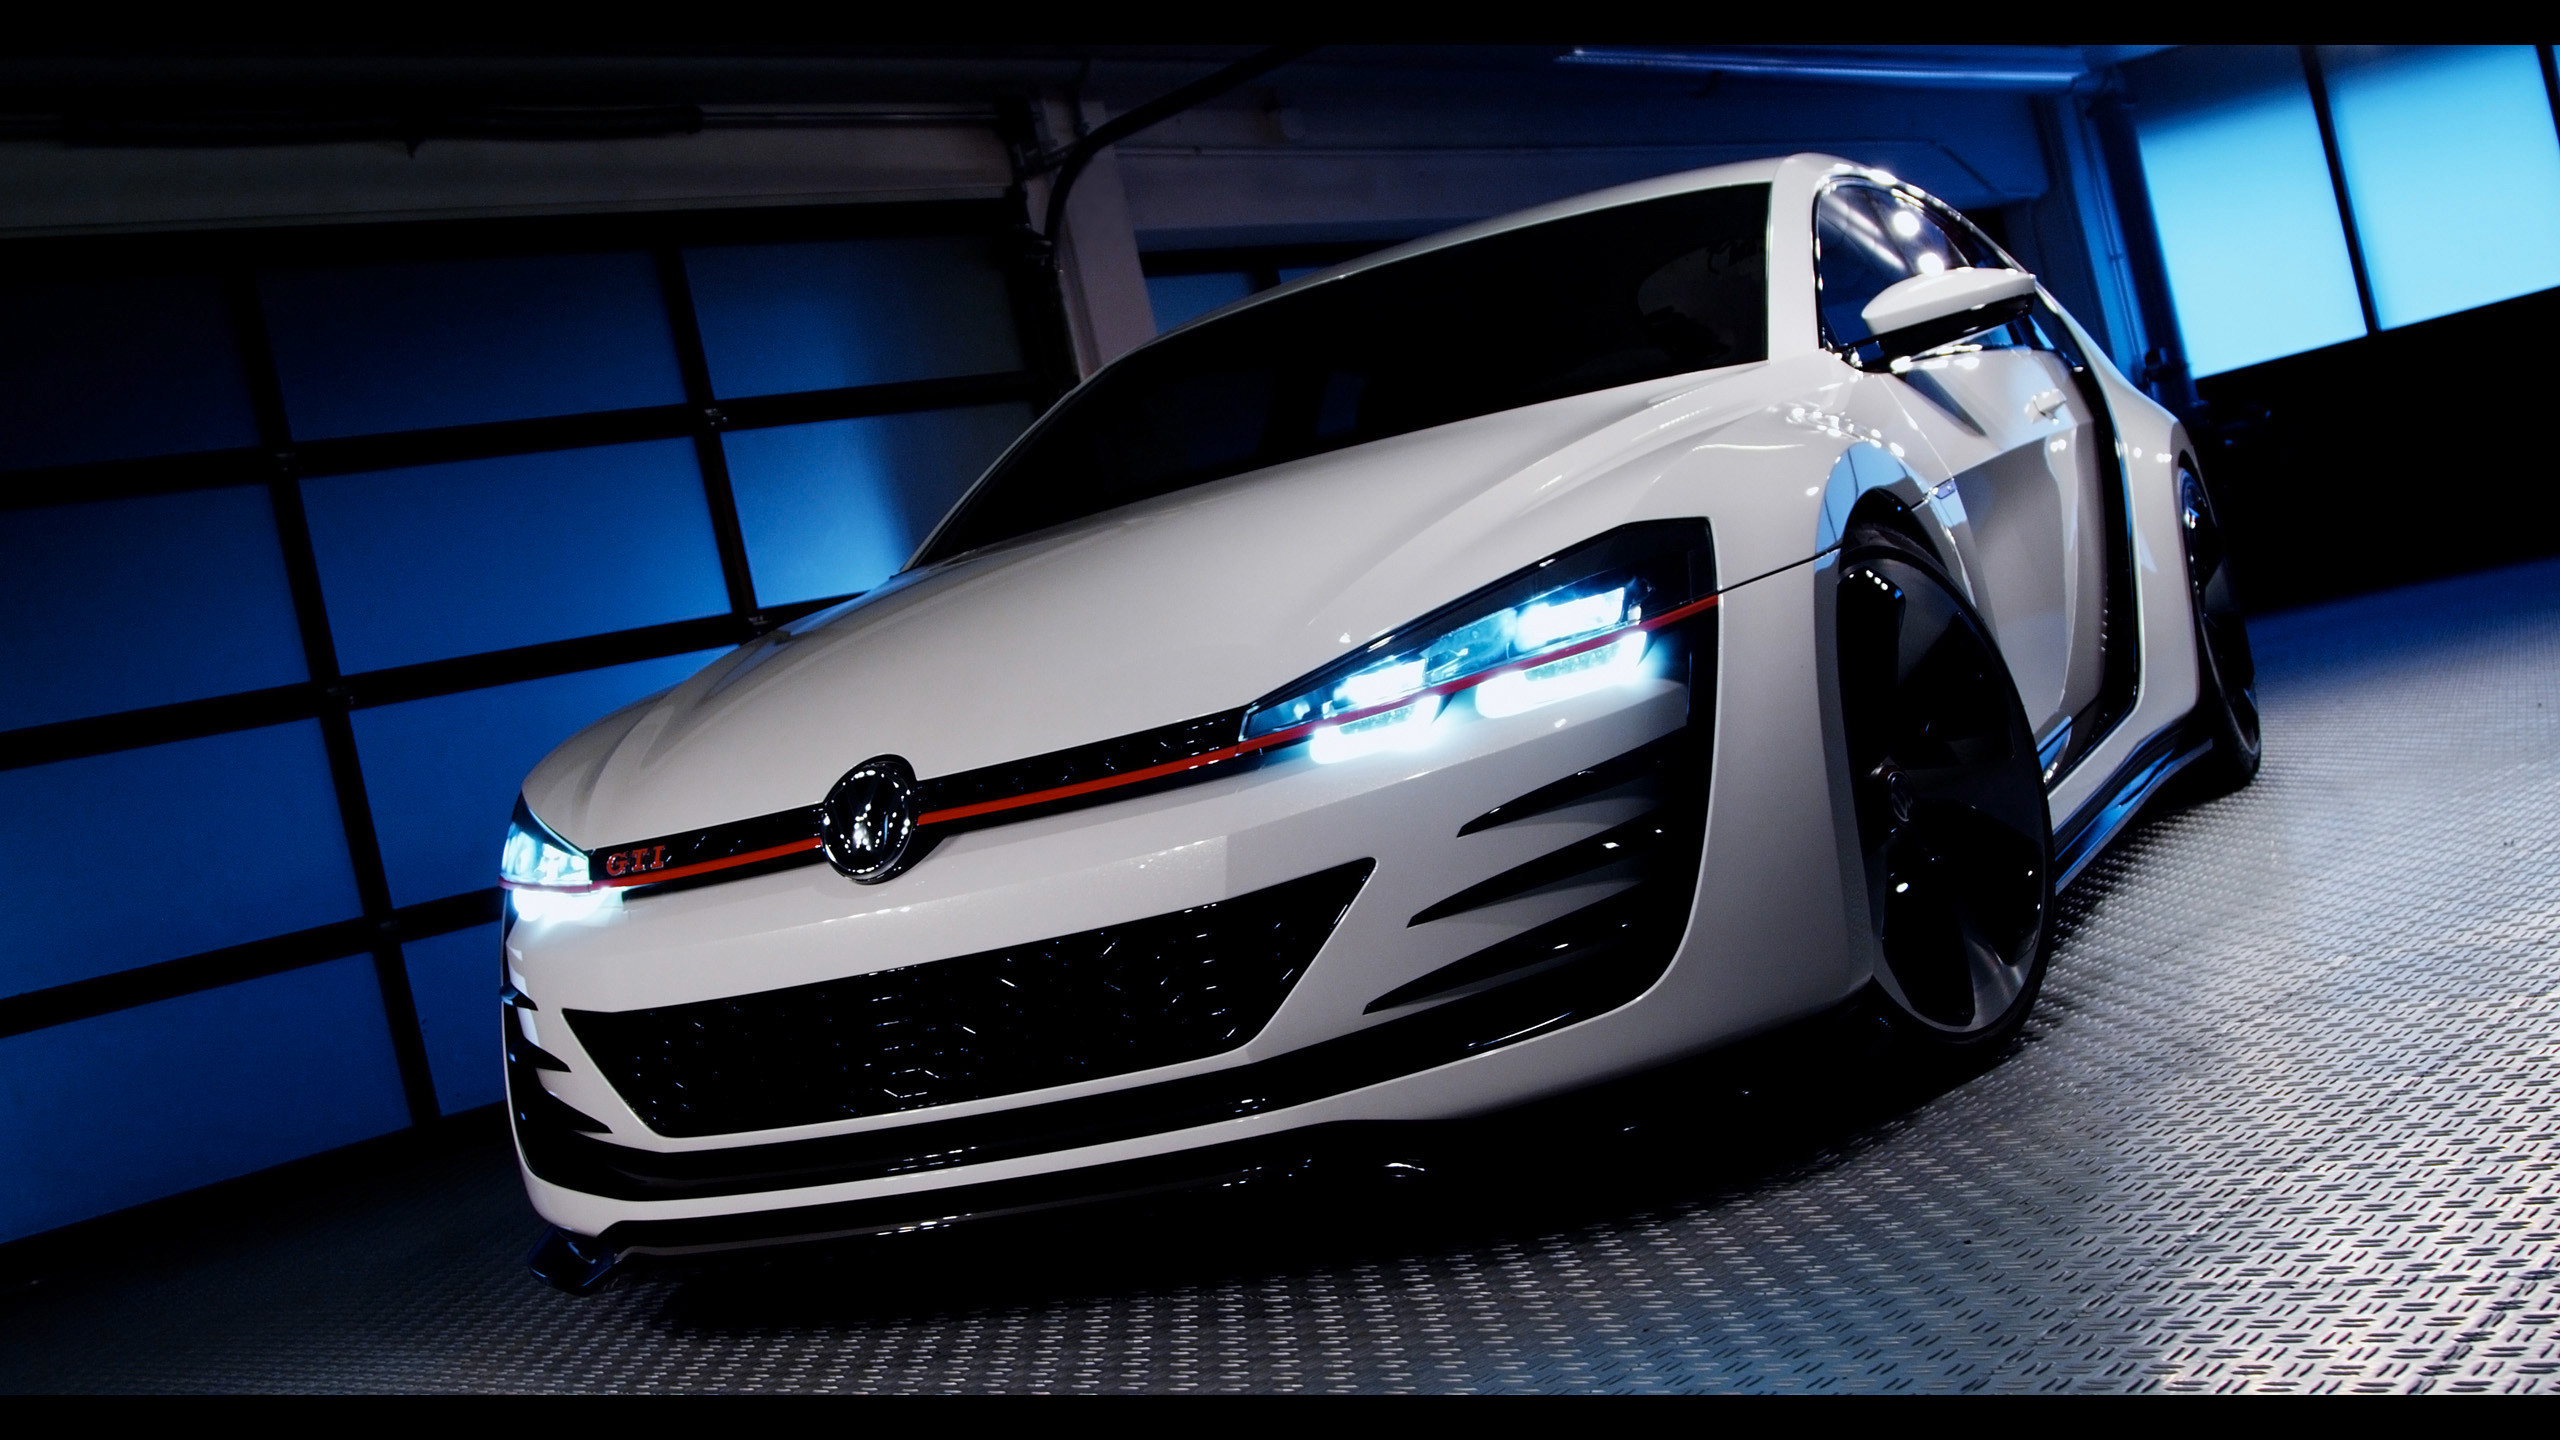 2560x1440 Volkswagen Design Vision GTI